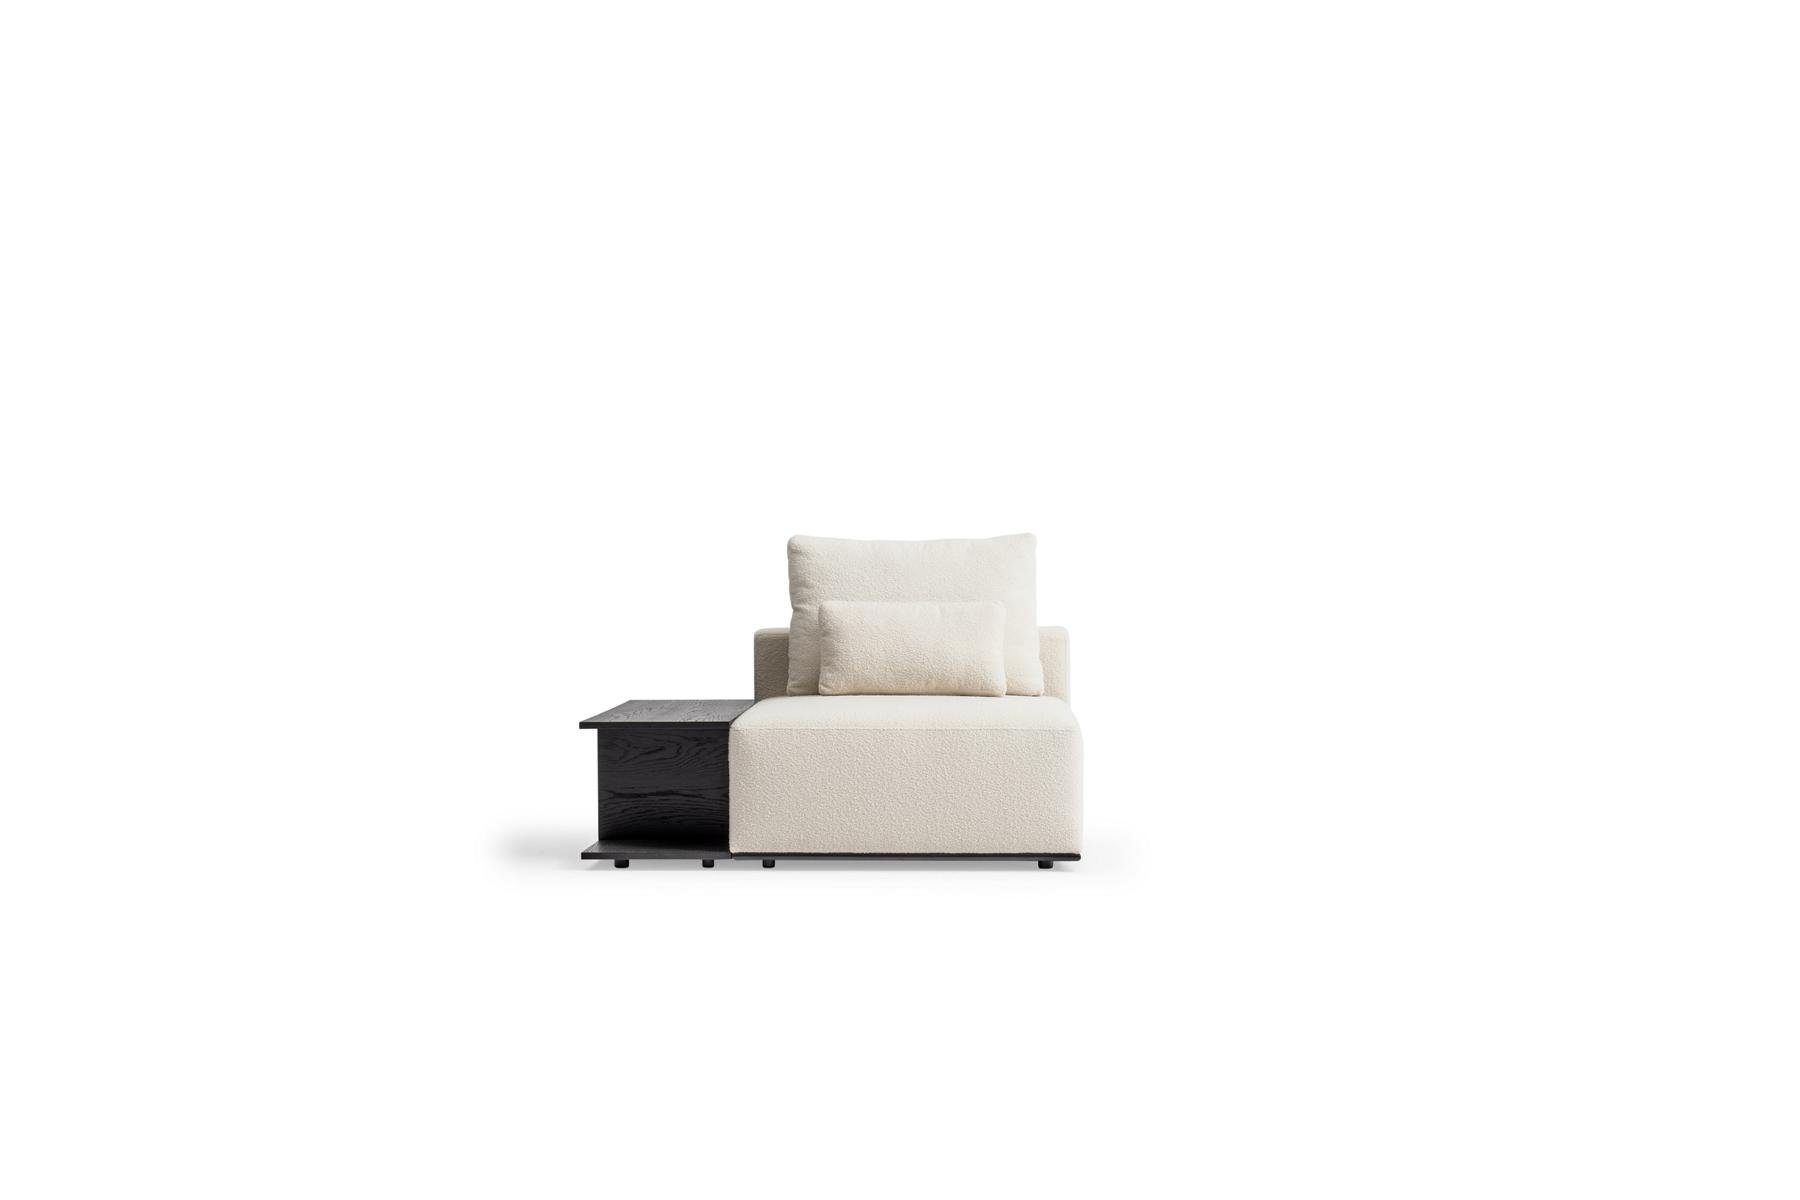 JVmoebel 3-Sitzer Weißer Luxus Dreisitzer Europe Made Teile, Textilsofas, Wohnzimmereinrichtung in 2 Sofa